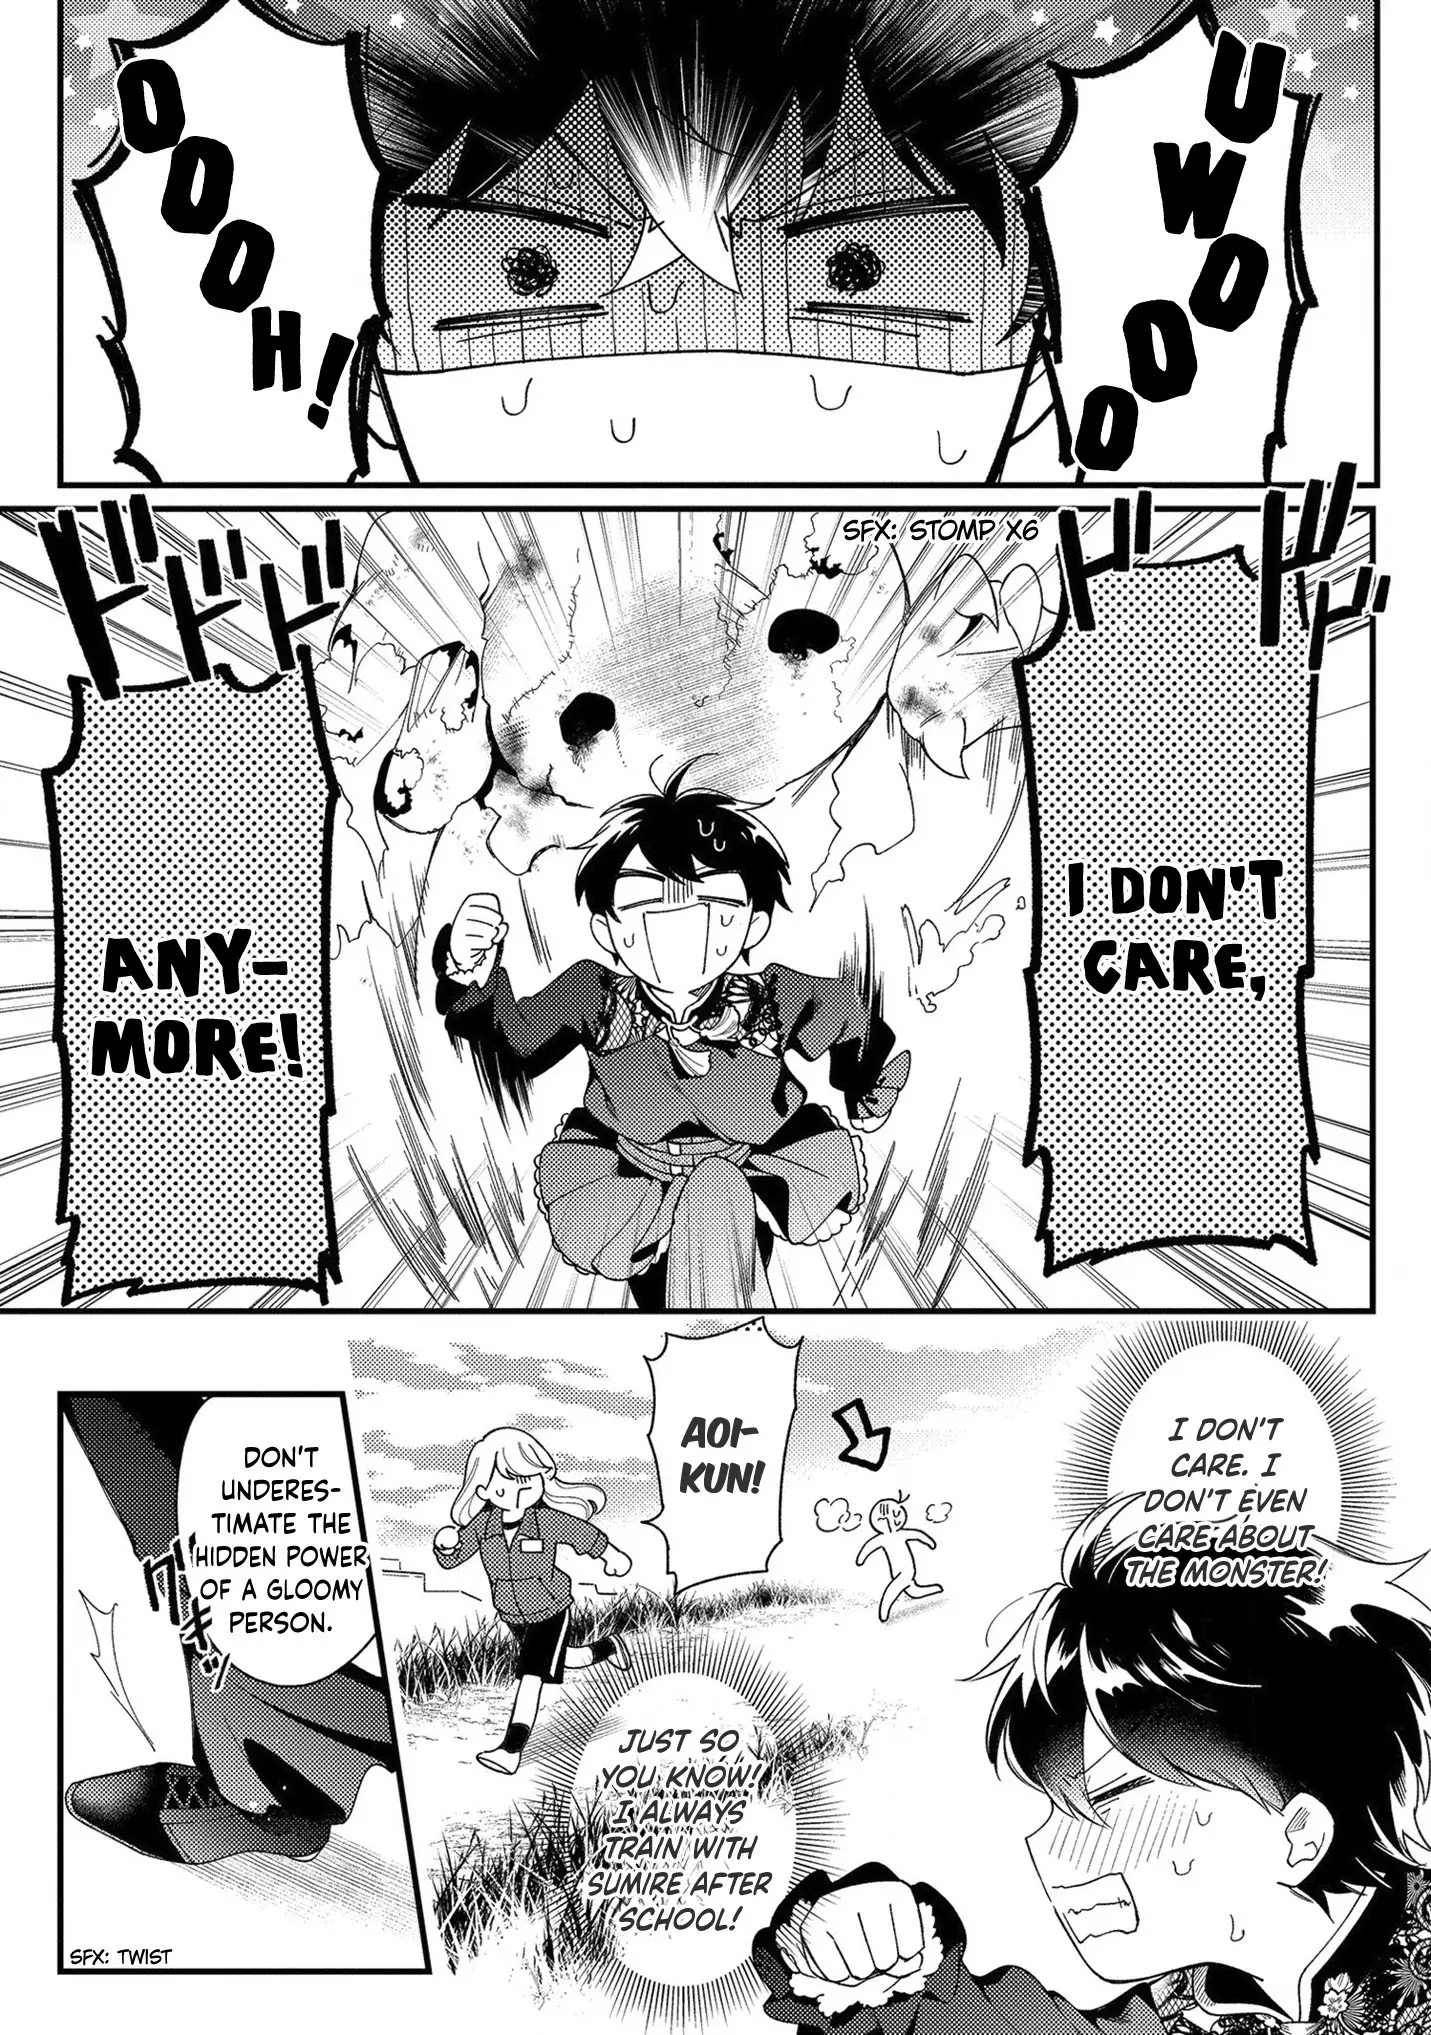 No Match For Aoi-Kun - 6 page 3